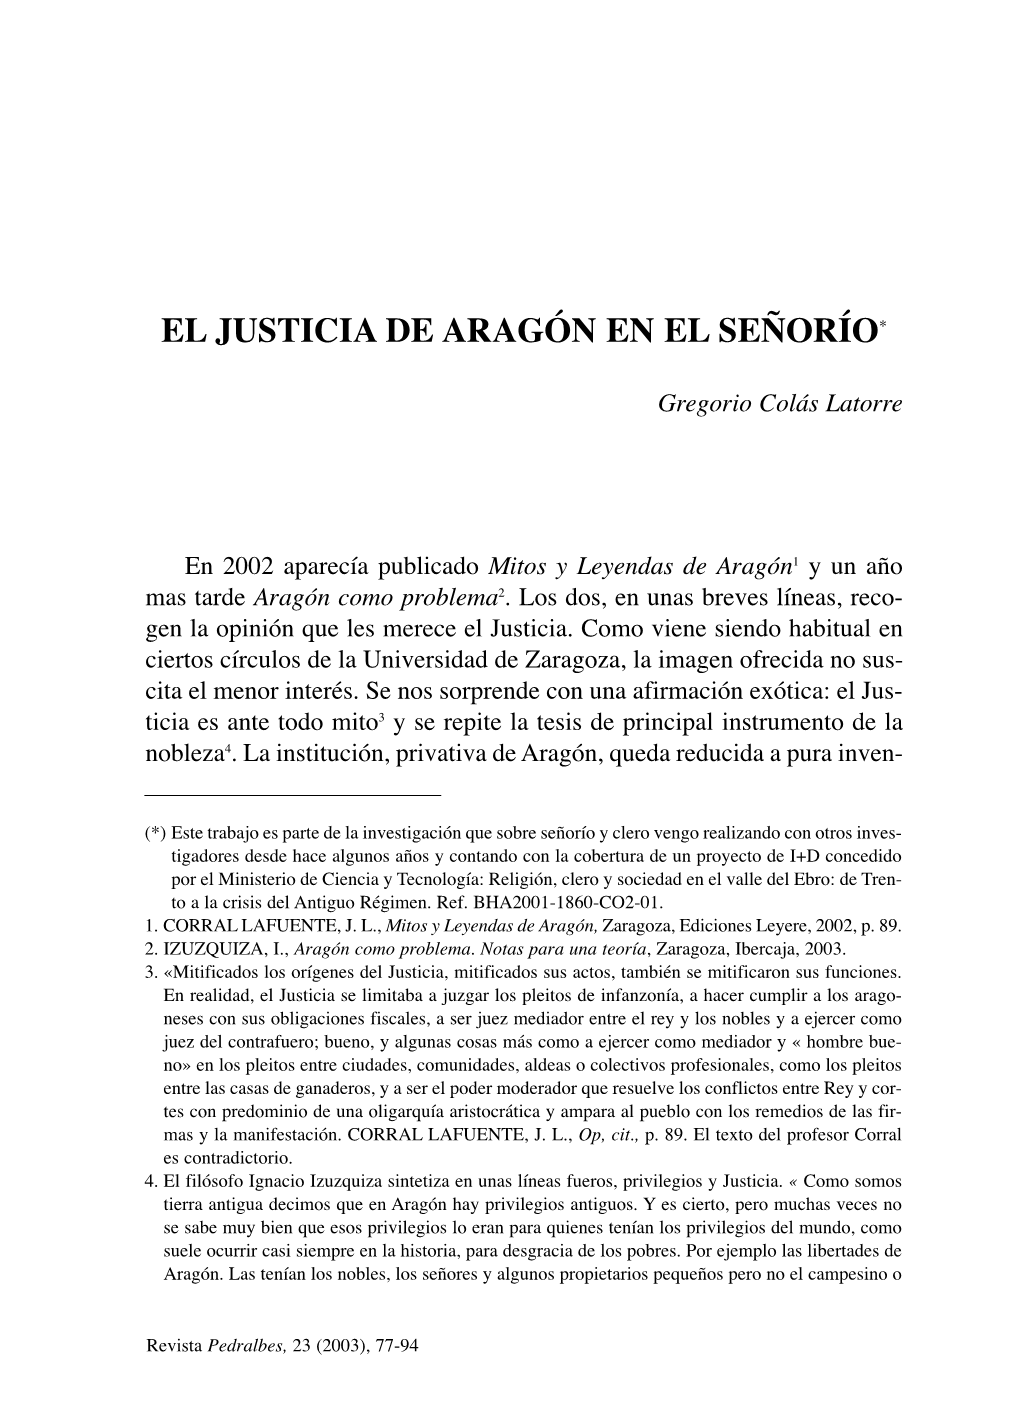 El Justicia De Aragón En El Señorío*